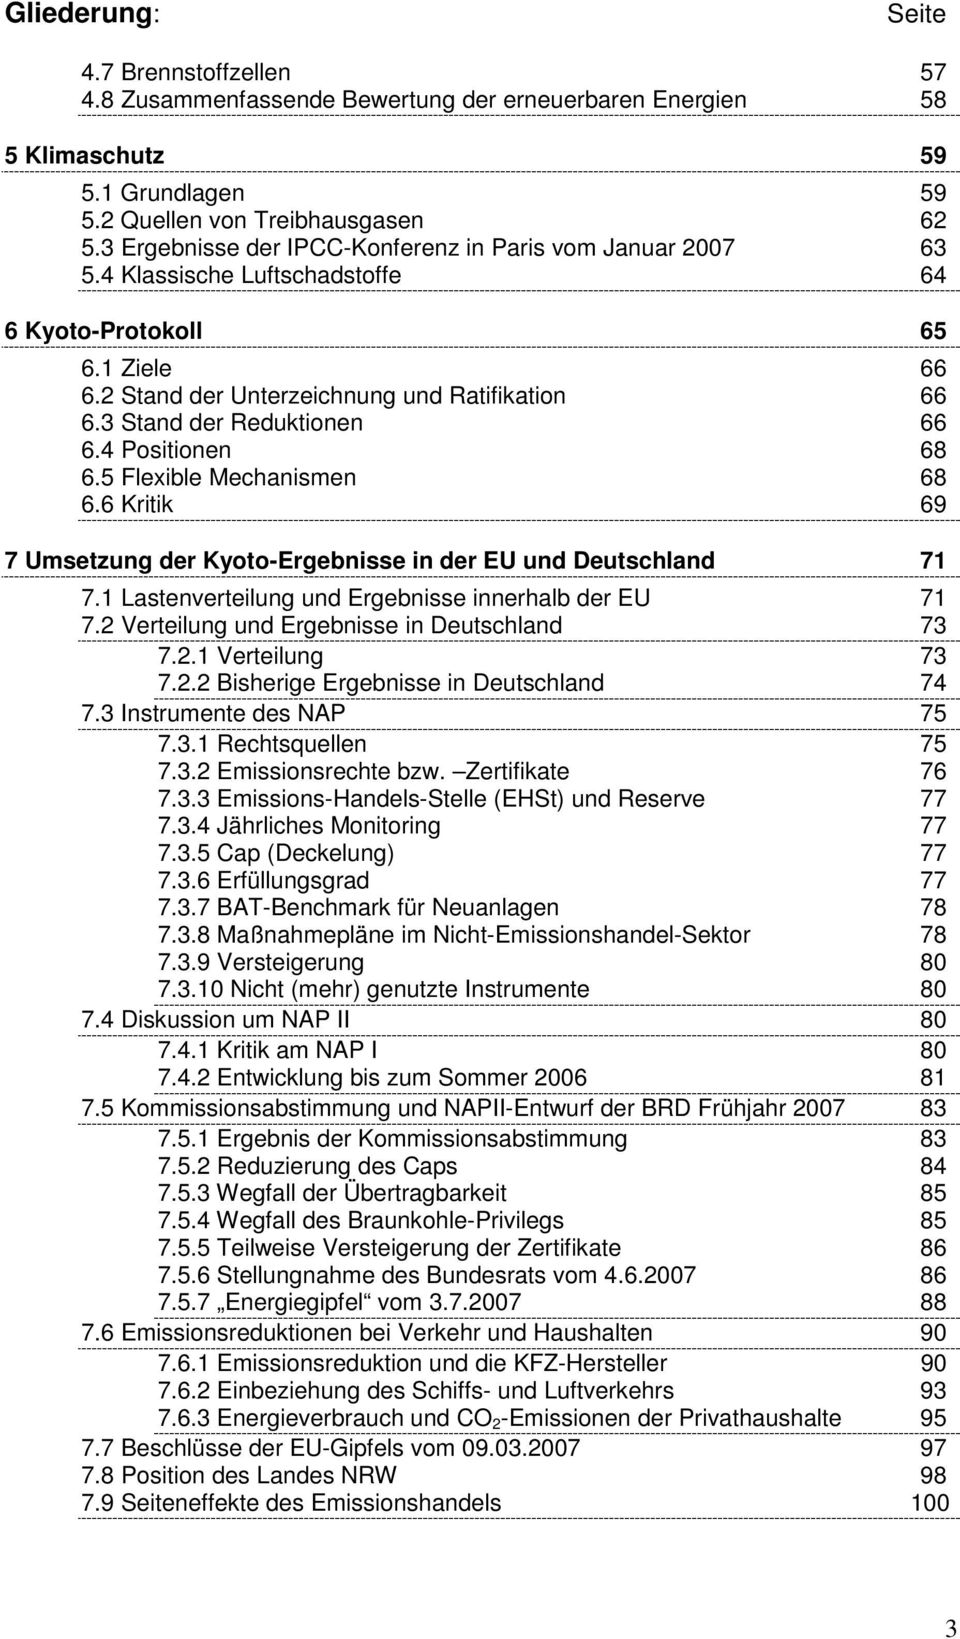 3 Stand der Reduktionen 66 6.4 Positionen 68 6.5 Flexible Mechanismen 68 6.6 Kritik 69 7 Umsetzung der Kyoto-Ergebnisse in der EU und Deutschland 71 7.